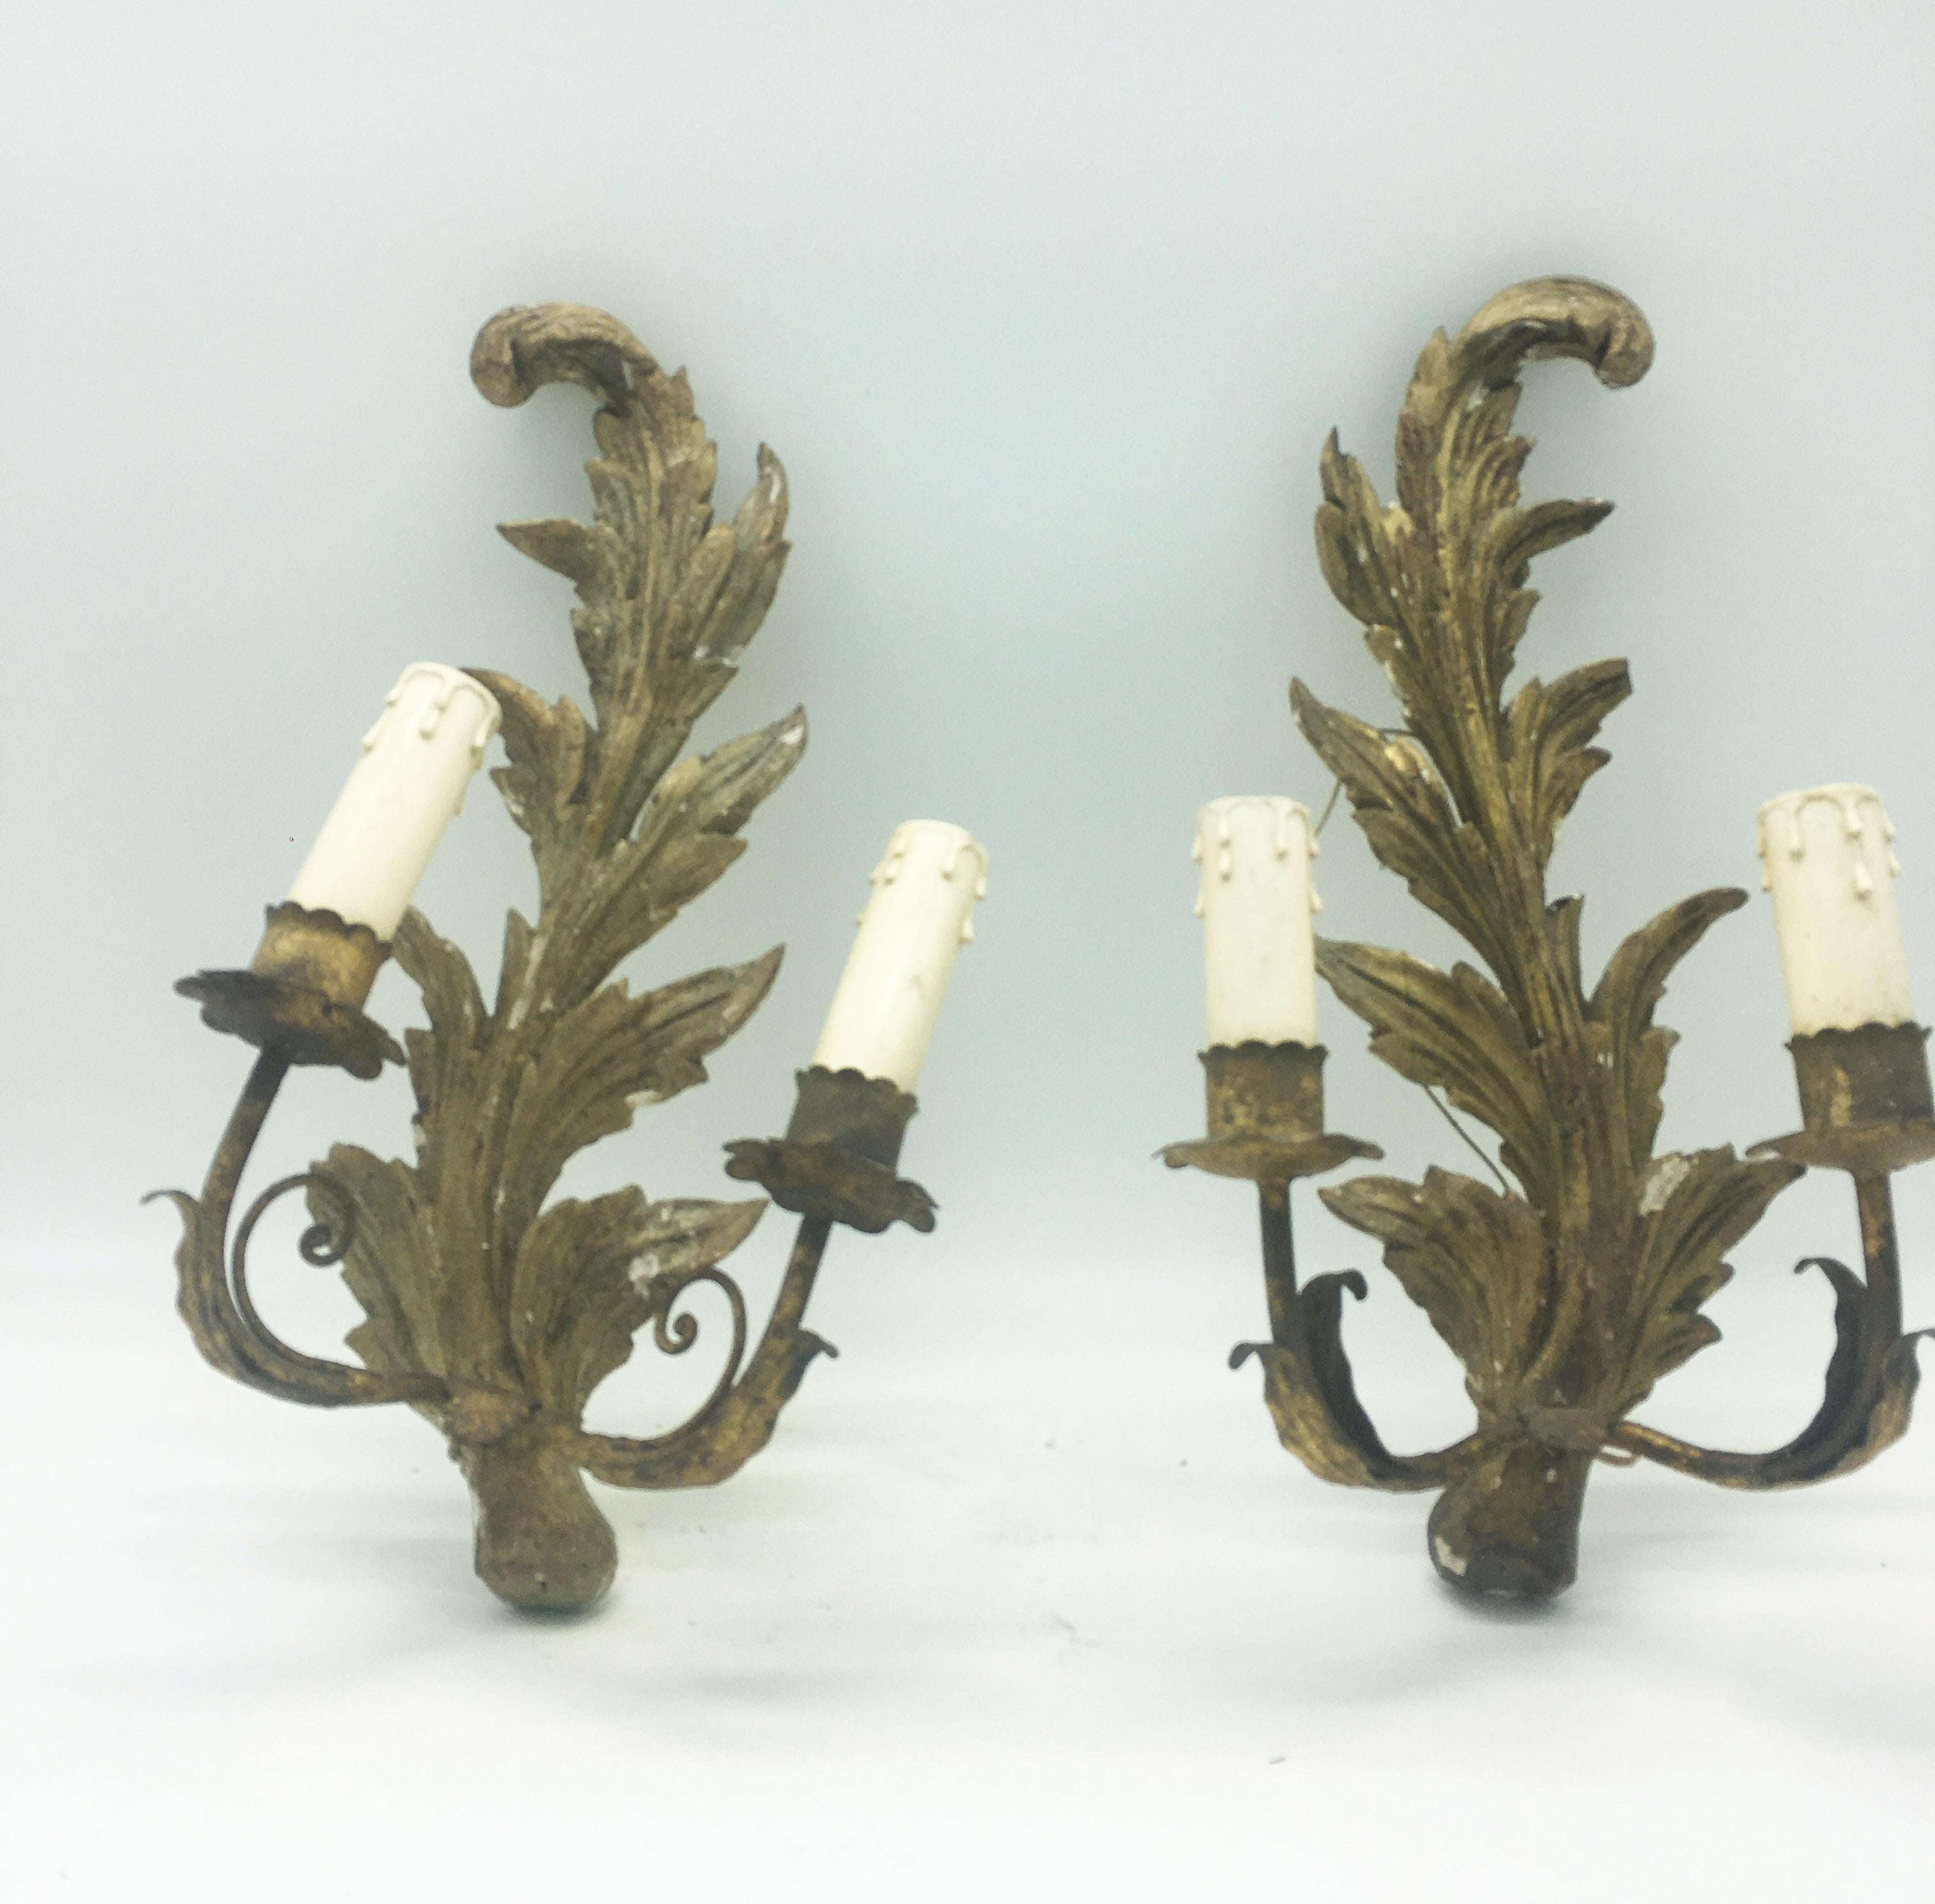 Rare paire ancienne d'appliques à 2 lumières en métal et bois sculpté et doré.
Fabrication napolitaine du 18ème siècle.
Convient aux candélabres avec lampe électrique.